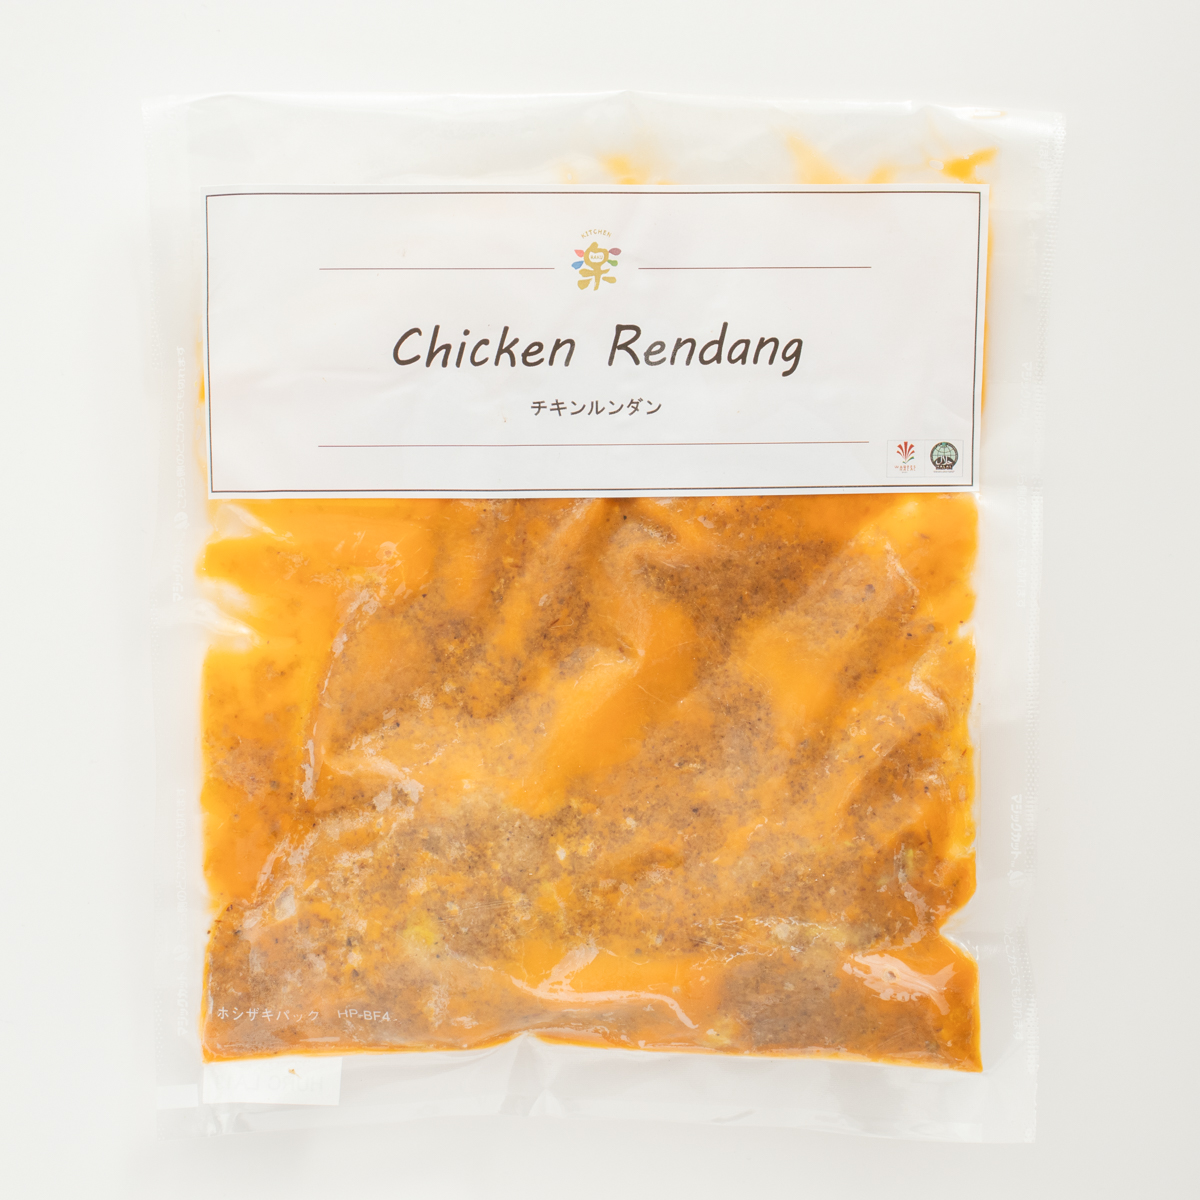 【冷凍食品】鶏肉を長時間煮込んで作ったチキンルンダン